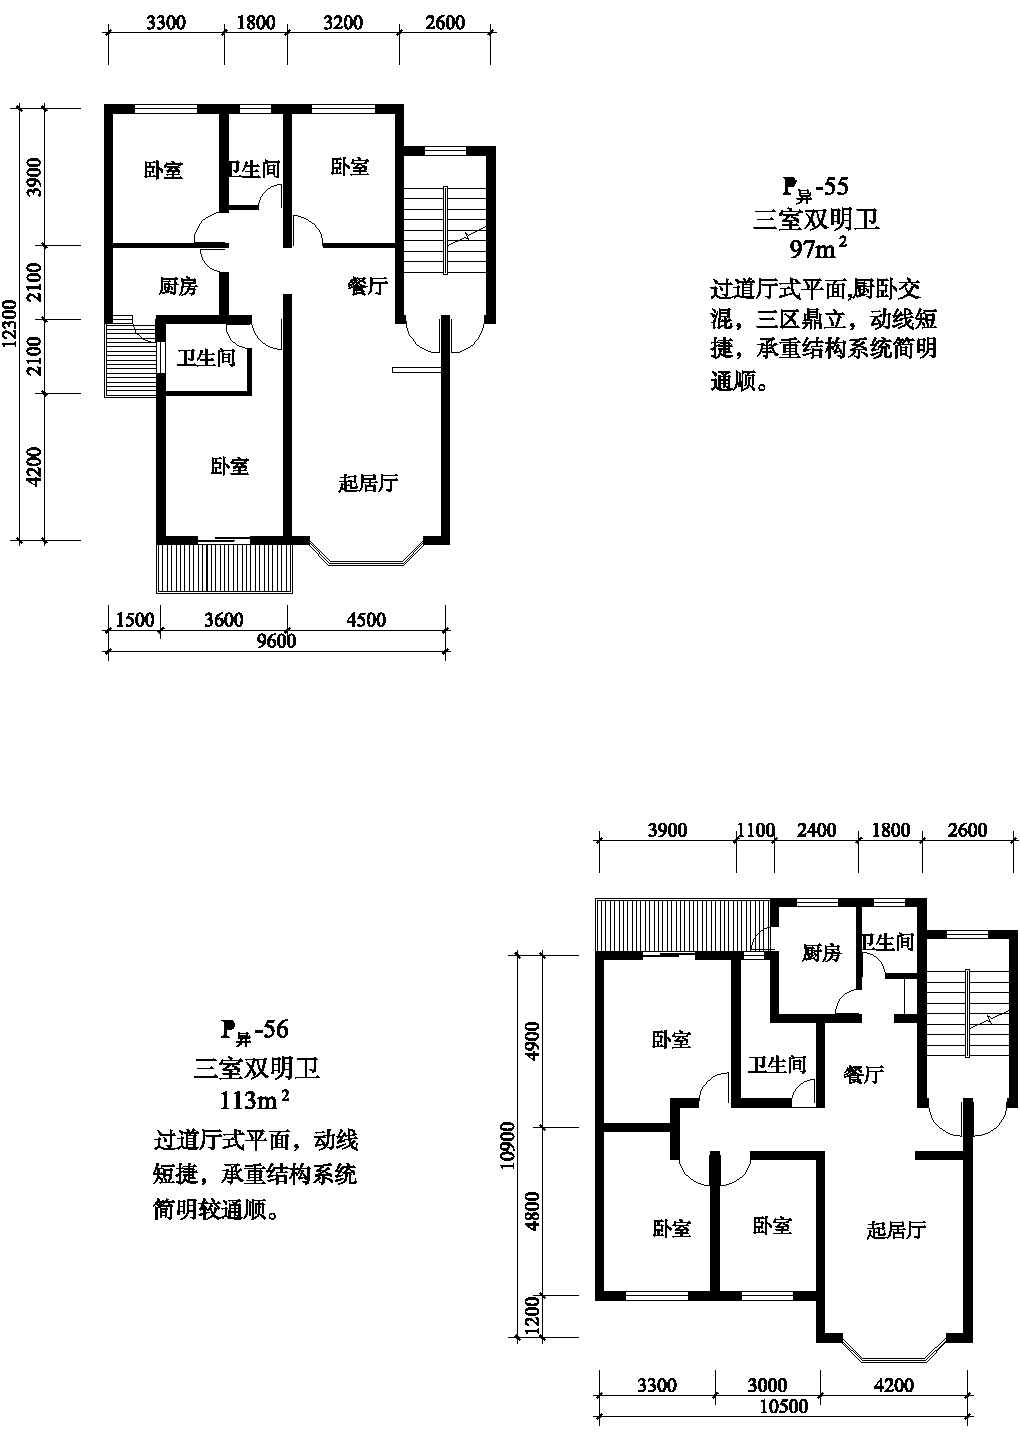 三室97/113平方单元式住宅户型平面图纸